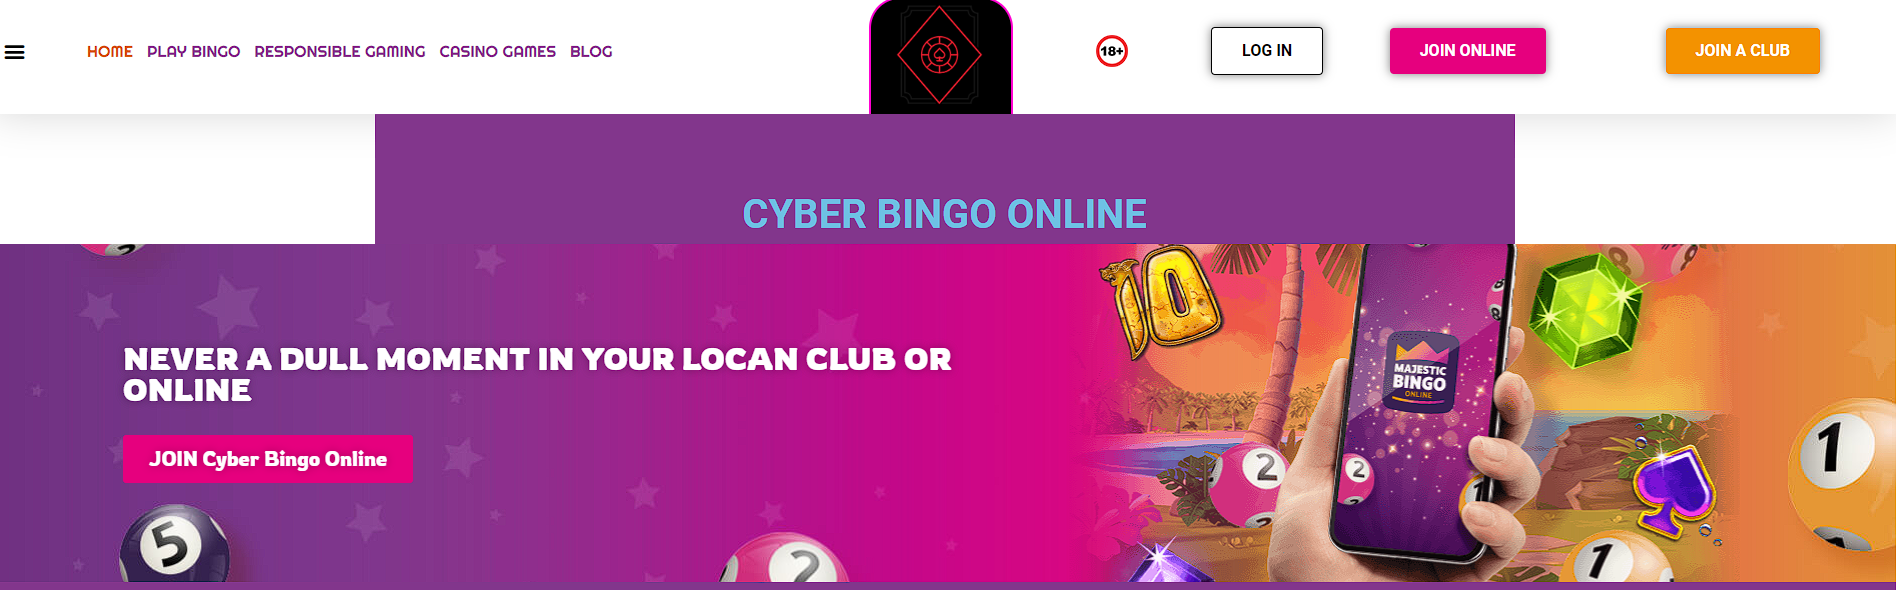 CyberBingo No Deposit Bonus Codes & Review